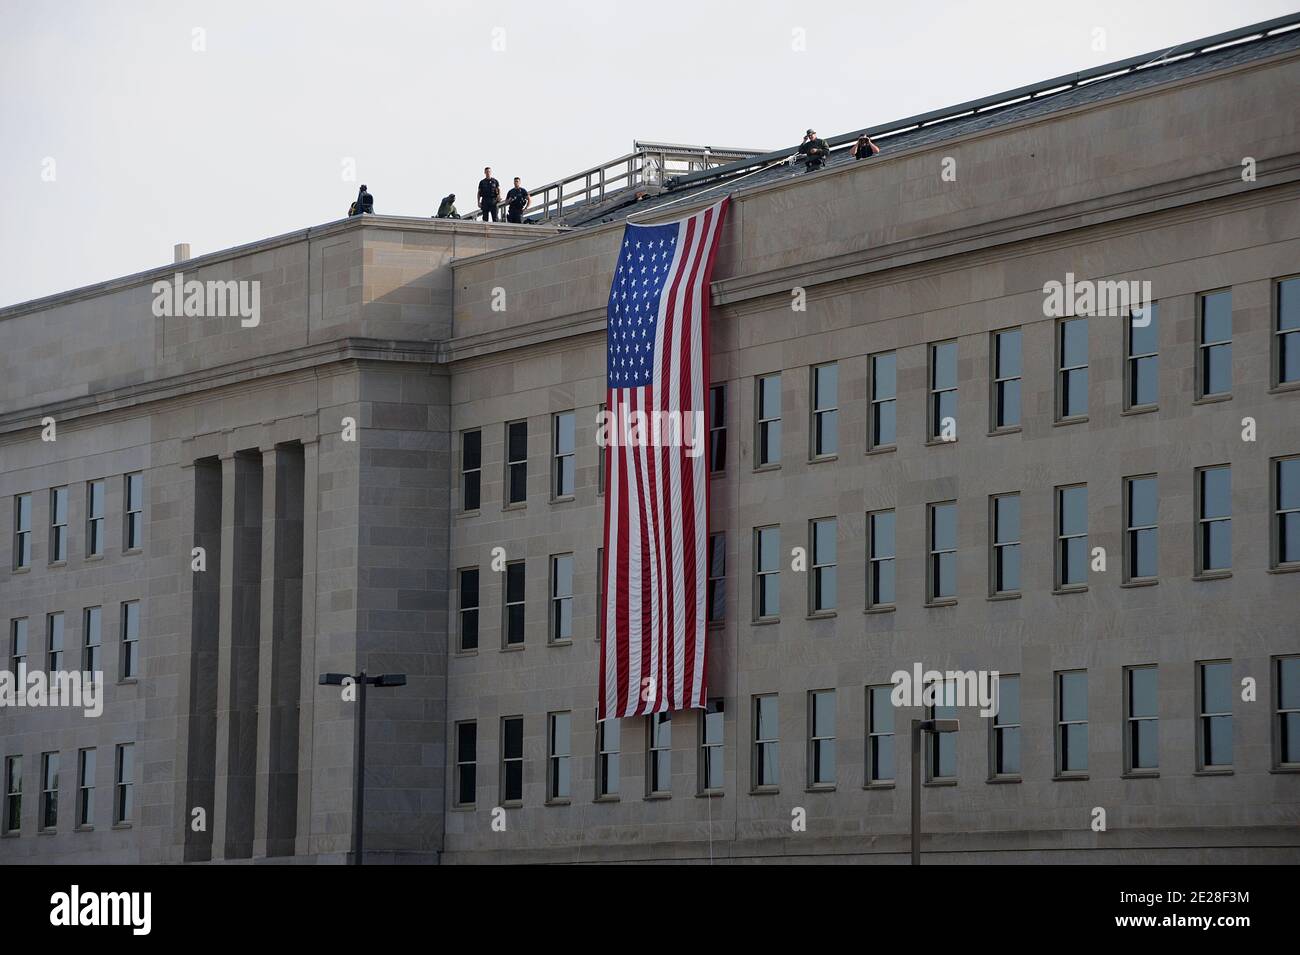 Un'enorme bandiera americana è appesa al punto di impatto al Pentagono nel decimo anniversario di 9/11 2001 attacchi terroristici del 11 settembre 2011 ad Arlington, VA, USA. Foto di Olivier Douliery/ABACAPRESS.COM Foto Stock